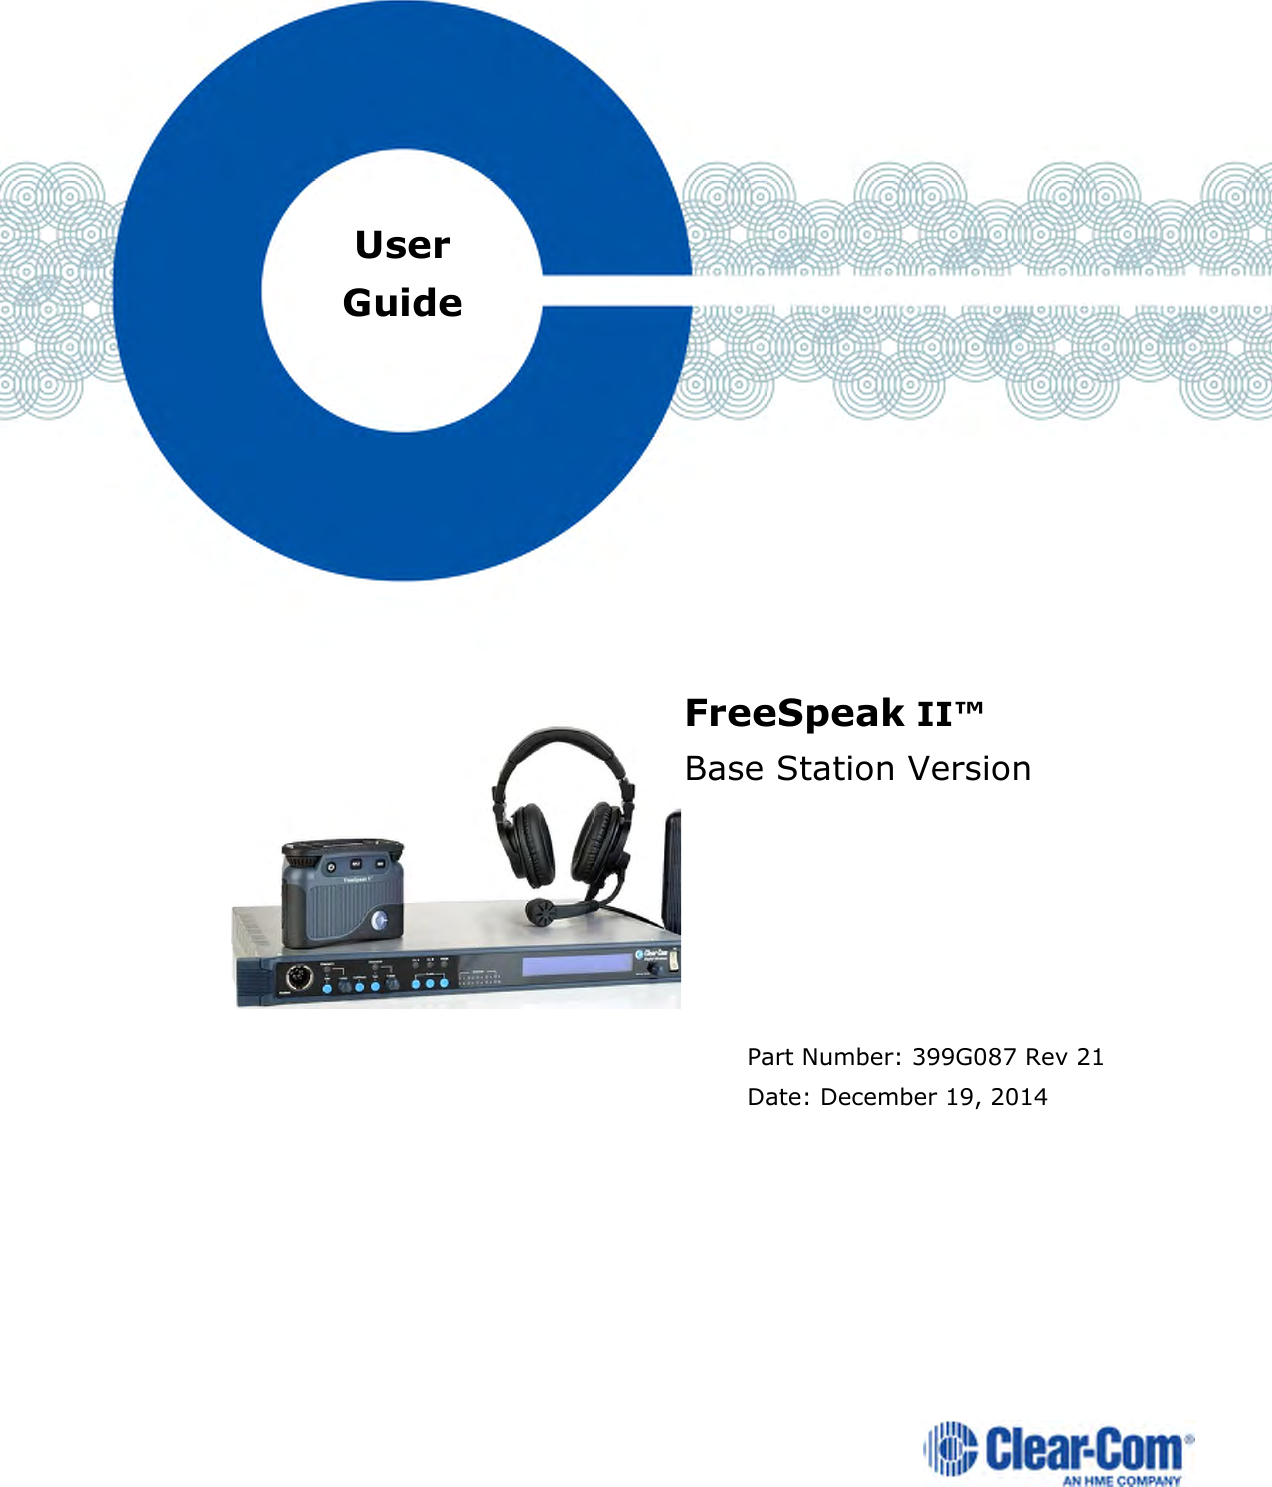                   FreeSpeak II™  Base Station Version       Part Number: 399G087 Rev 21 Date: December 19, 2014 User Guide 